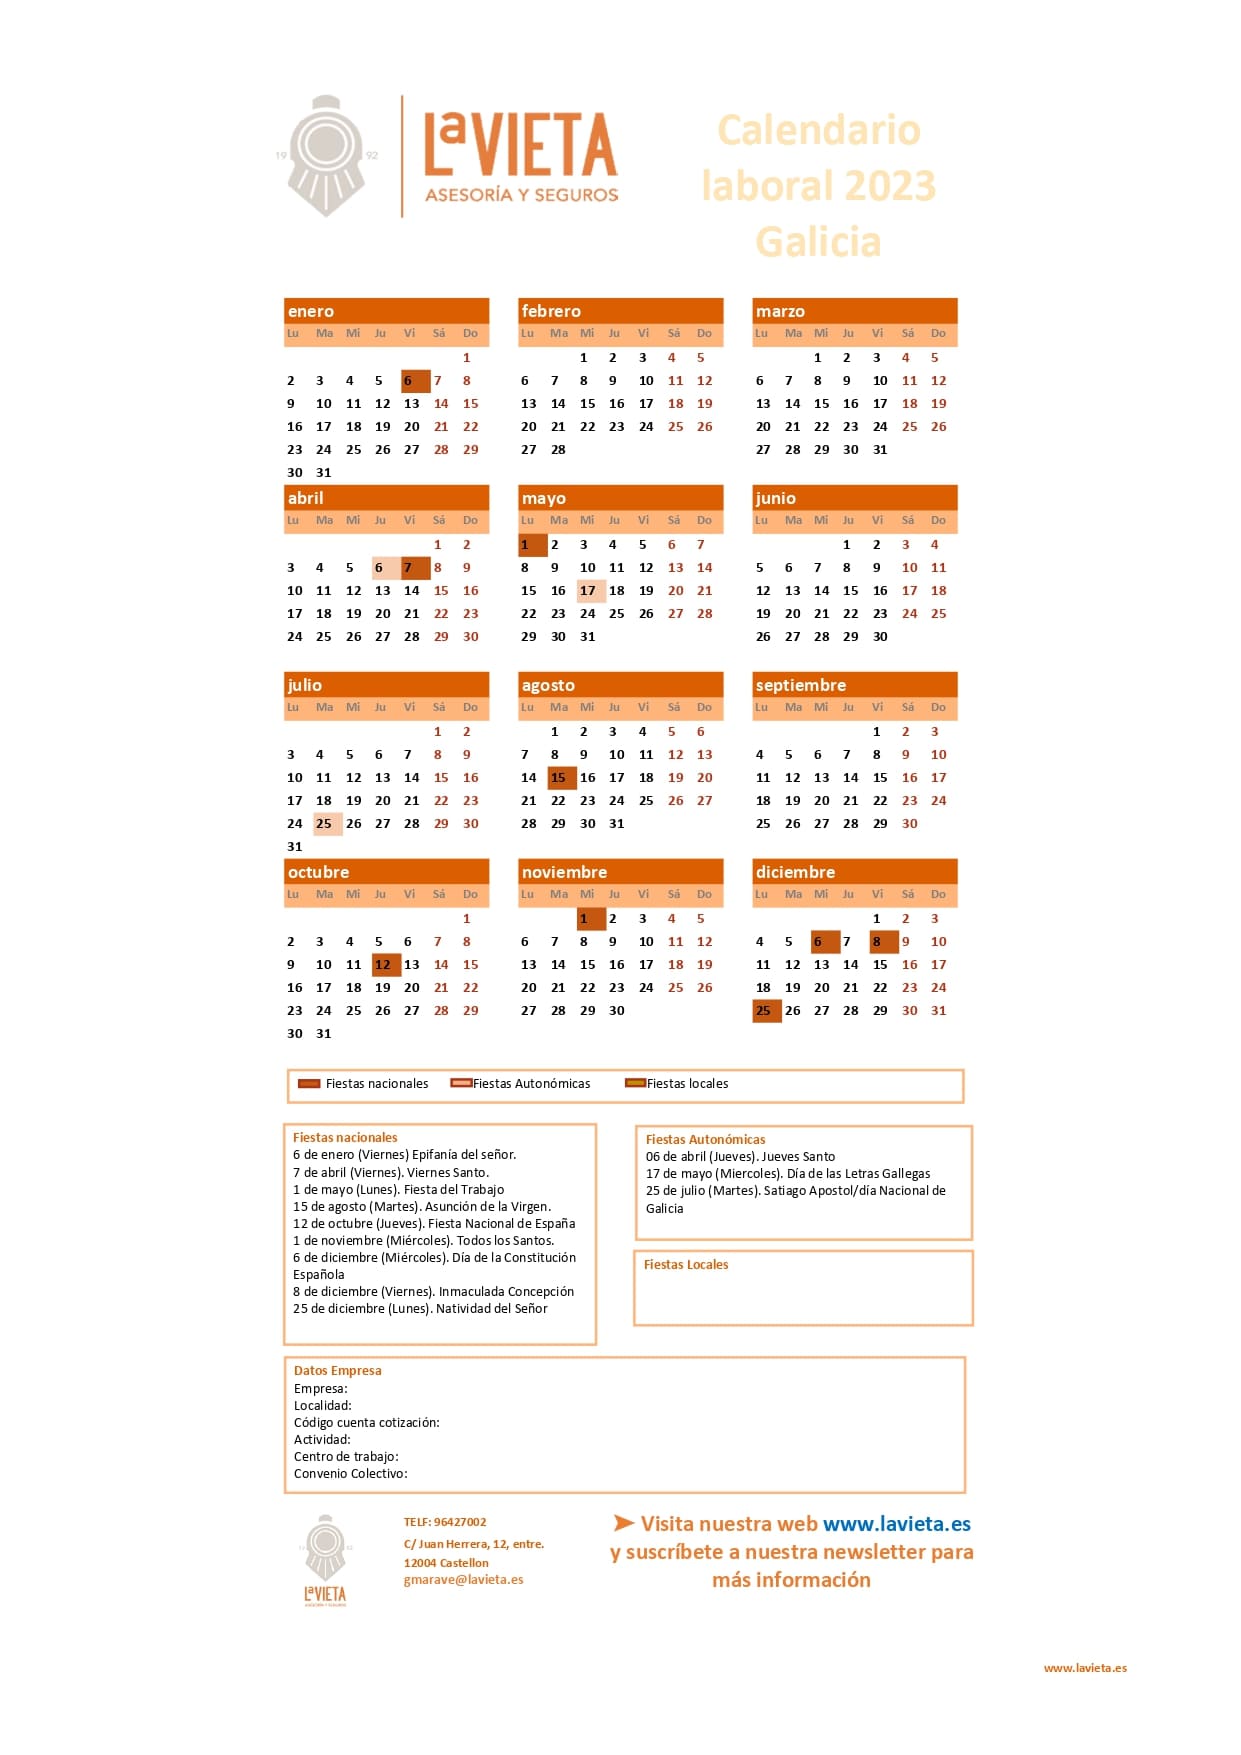 Festivos De Galicia 2023 Calendario laboral de Galicia 2023 en PDF para imprimir